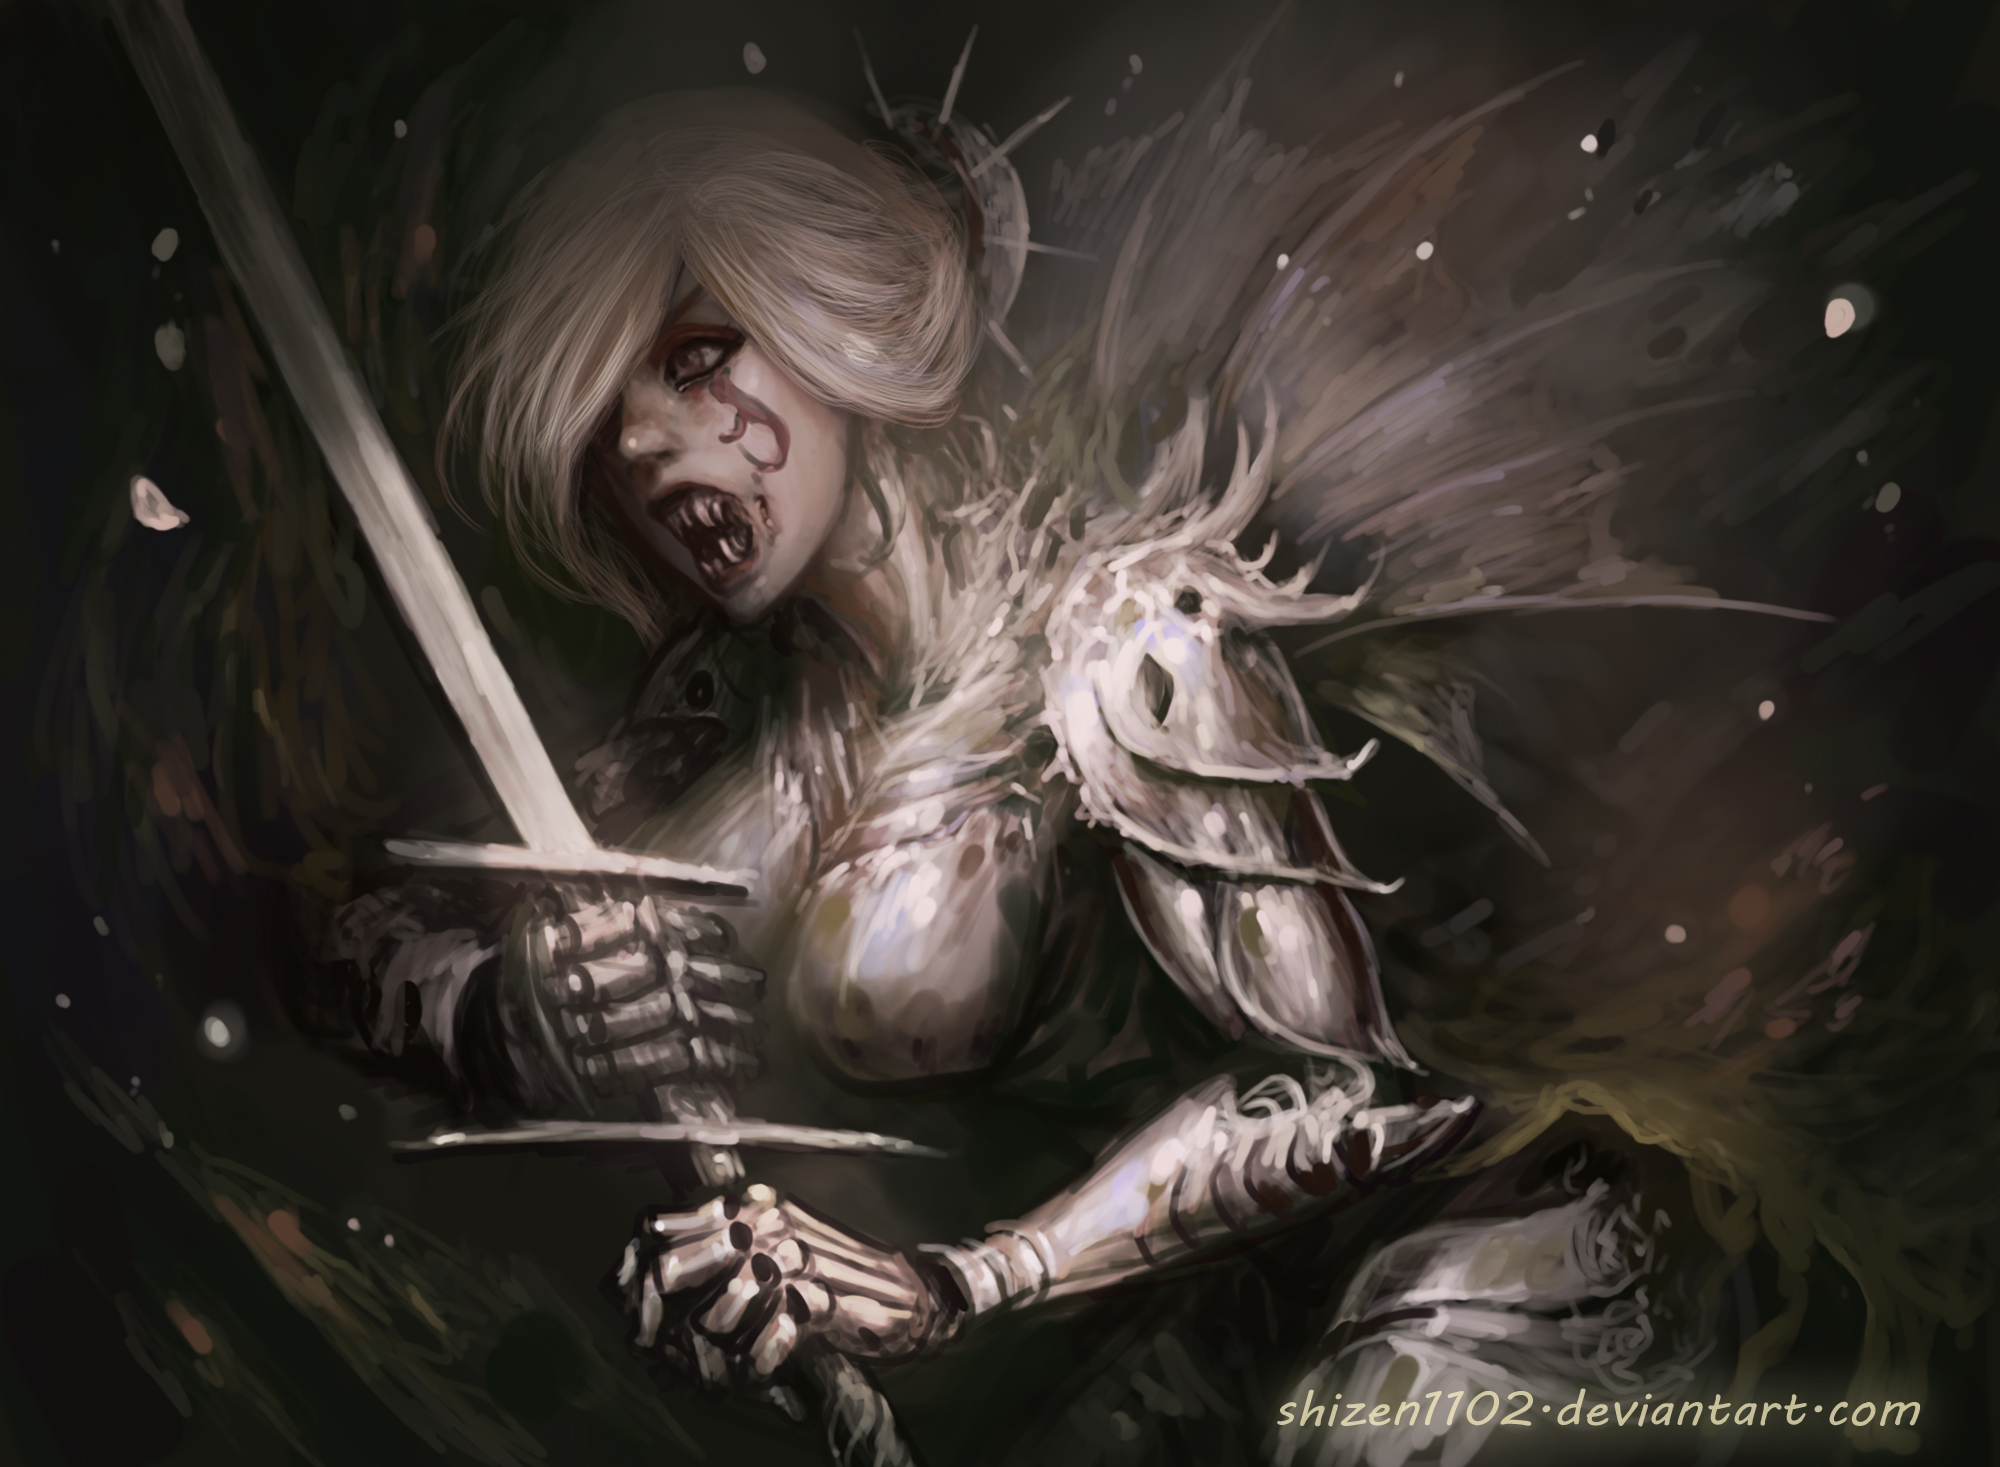 Free download wallpaper Dark, Women, Armor, Sword, Woman Warrior on your PC desktop